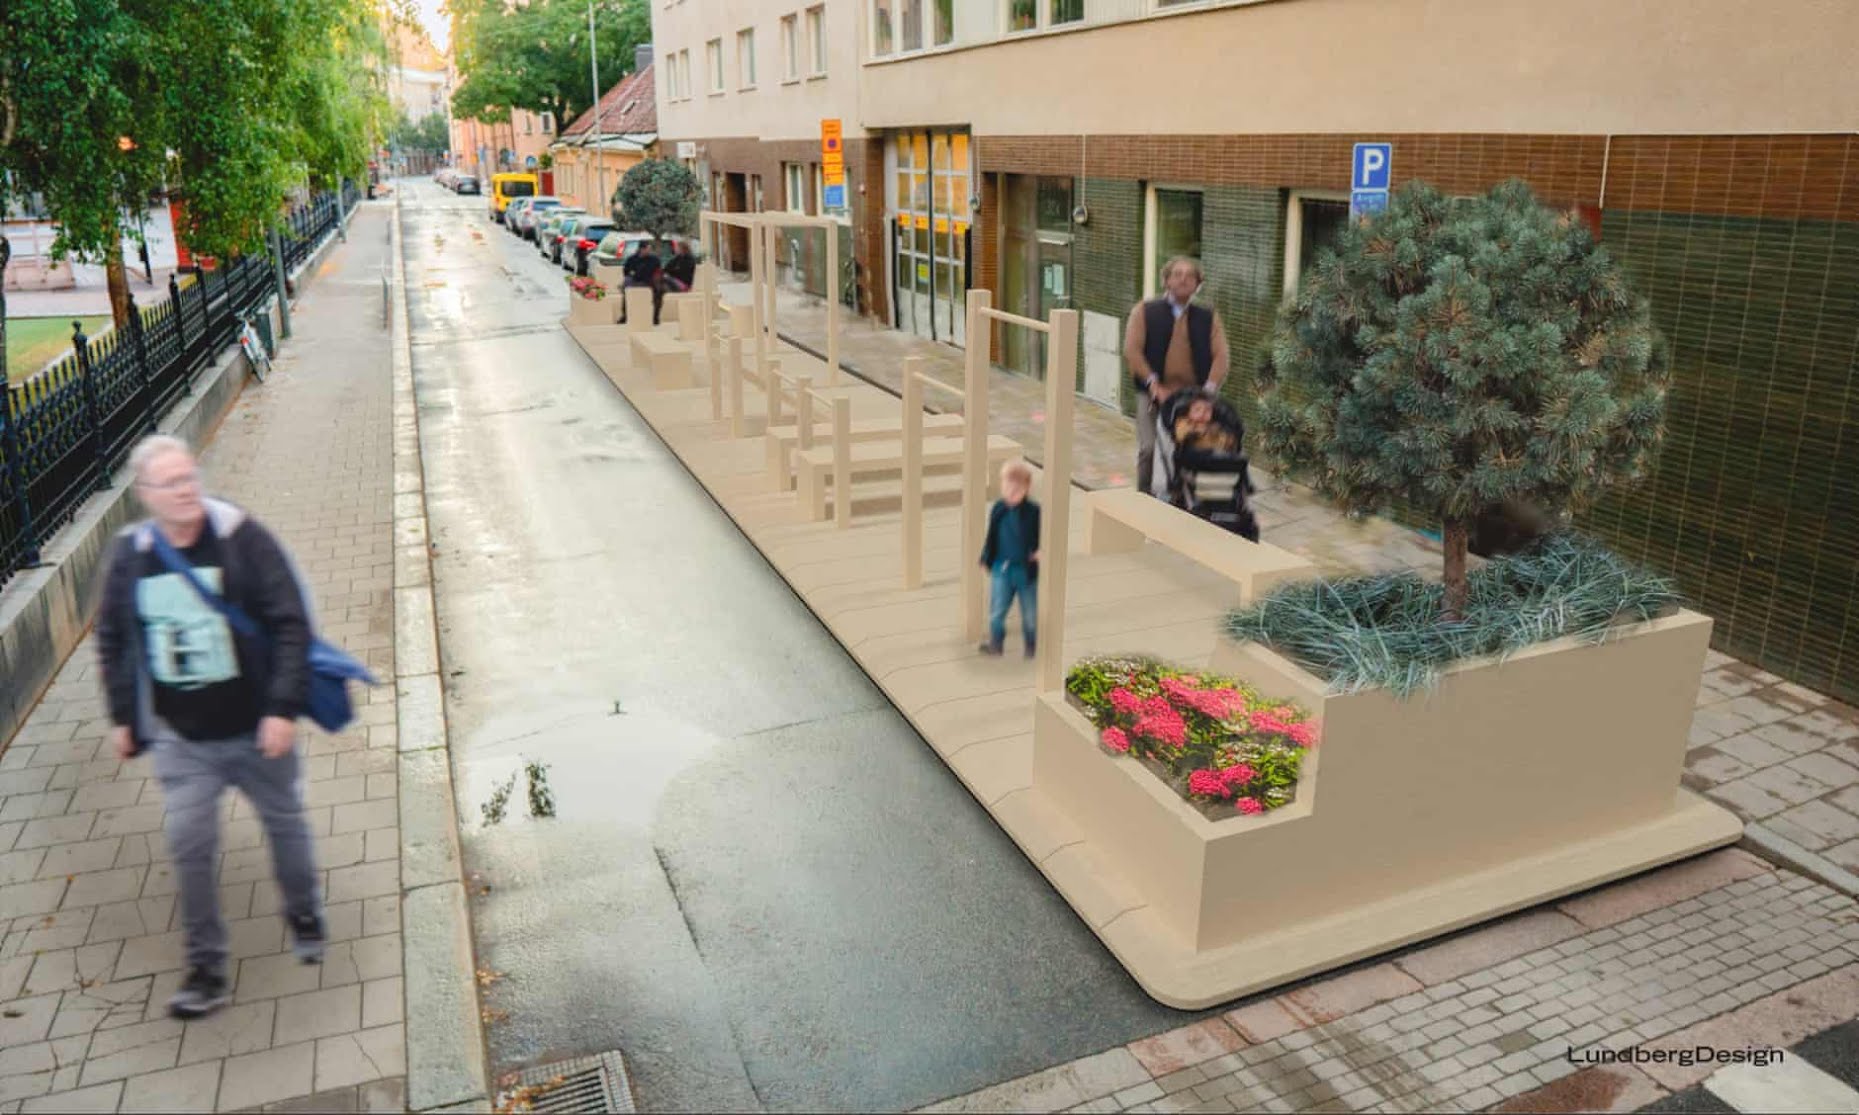 Architektovo ztvárnění nového pop-up veřejného prostoru ve Stockholmu, který je součástí švédského vládního projektu s názvem Street Moves. | zdroj: theguardian.com